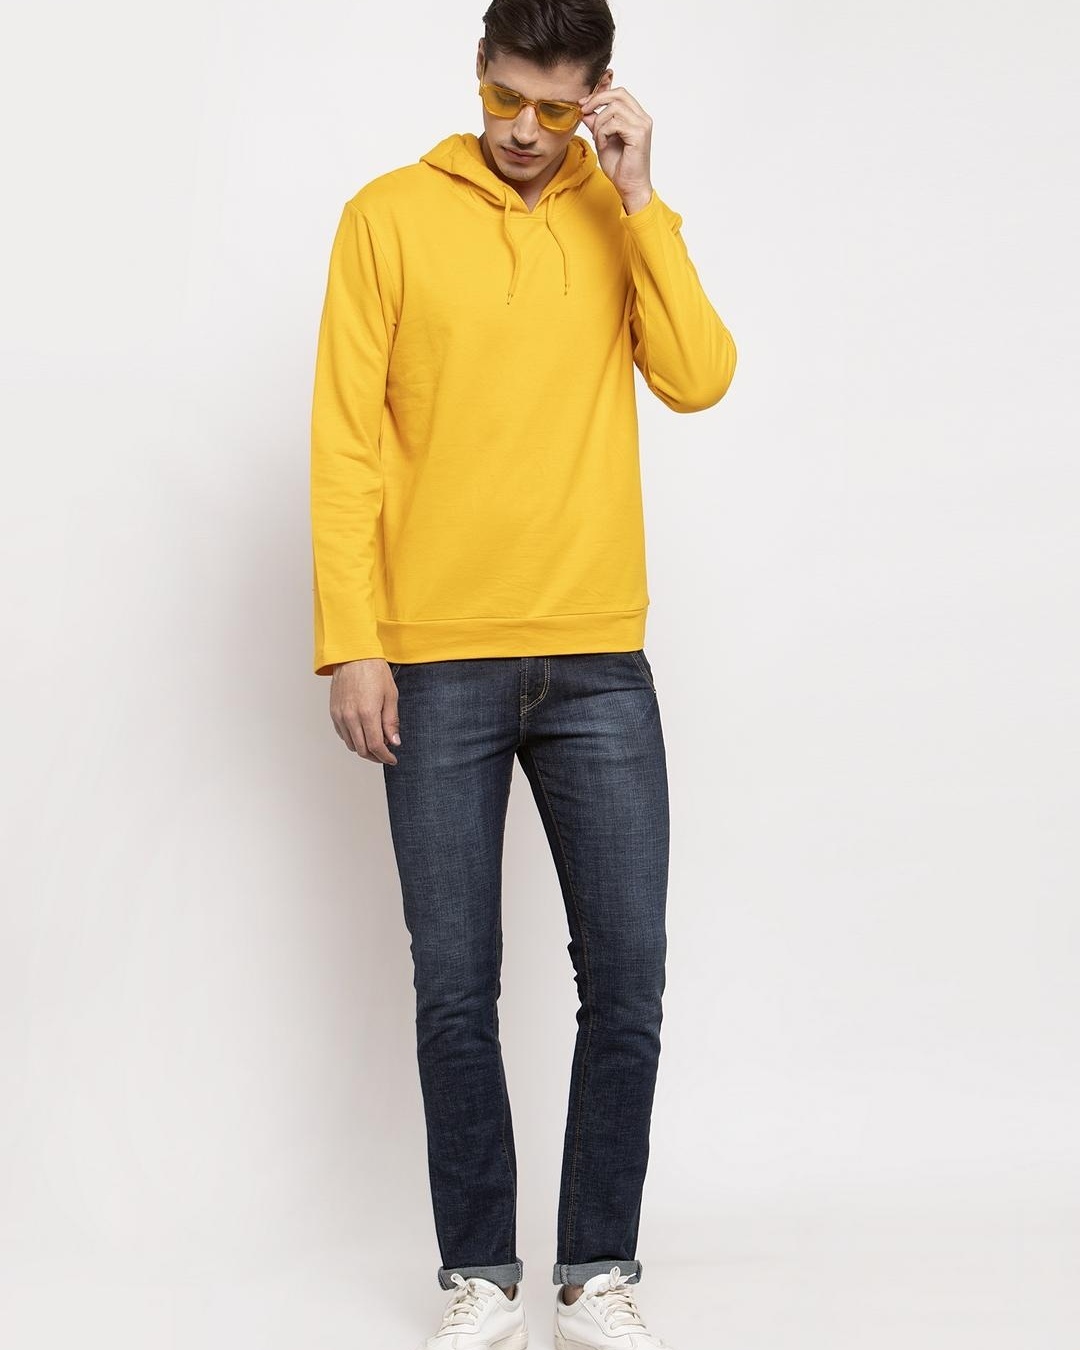 Buy Men's Yellow Hoodie Online at Bewakoof